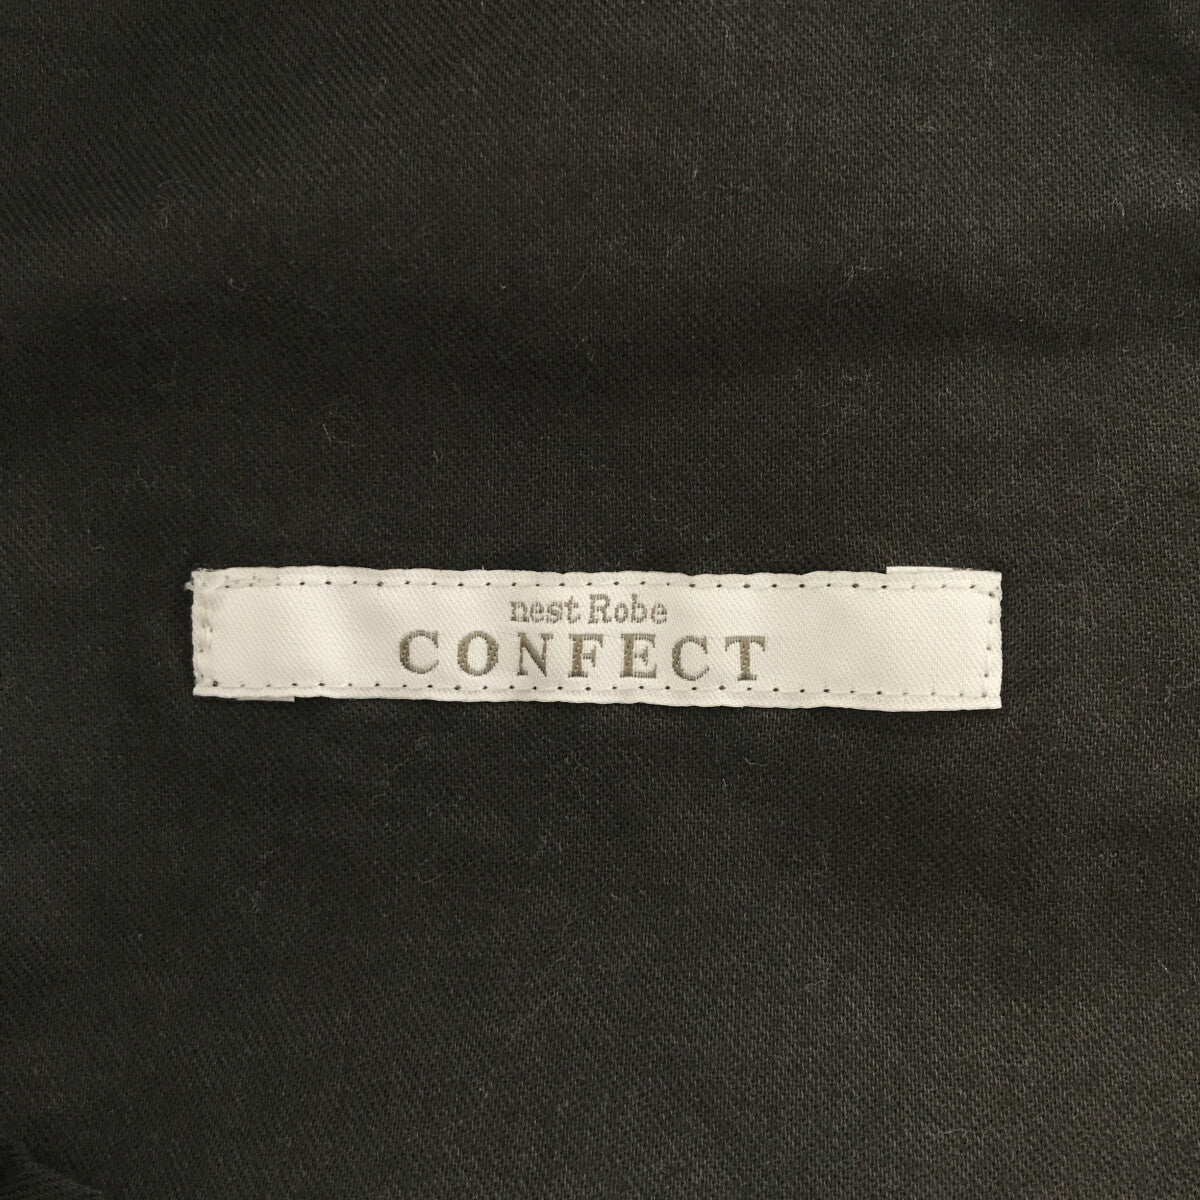 nest robe CONFECT / ネストローブコンフェクト | コットンリネン イージーパンツ | 4 | グレー | メンズ